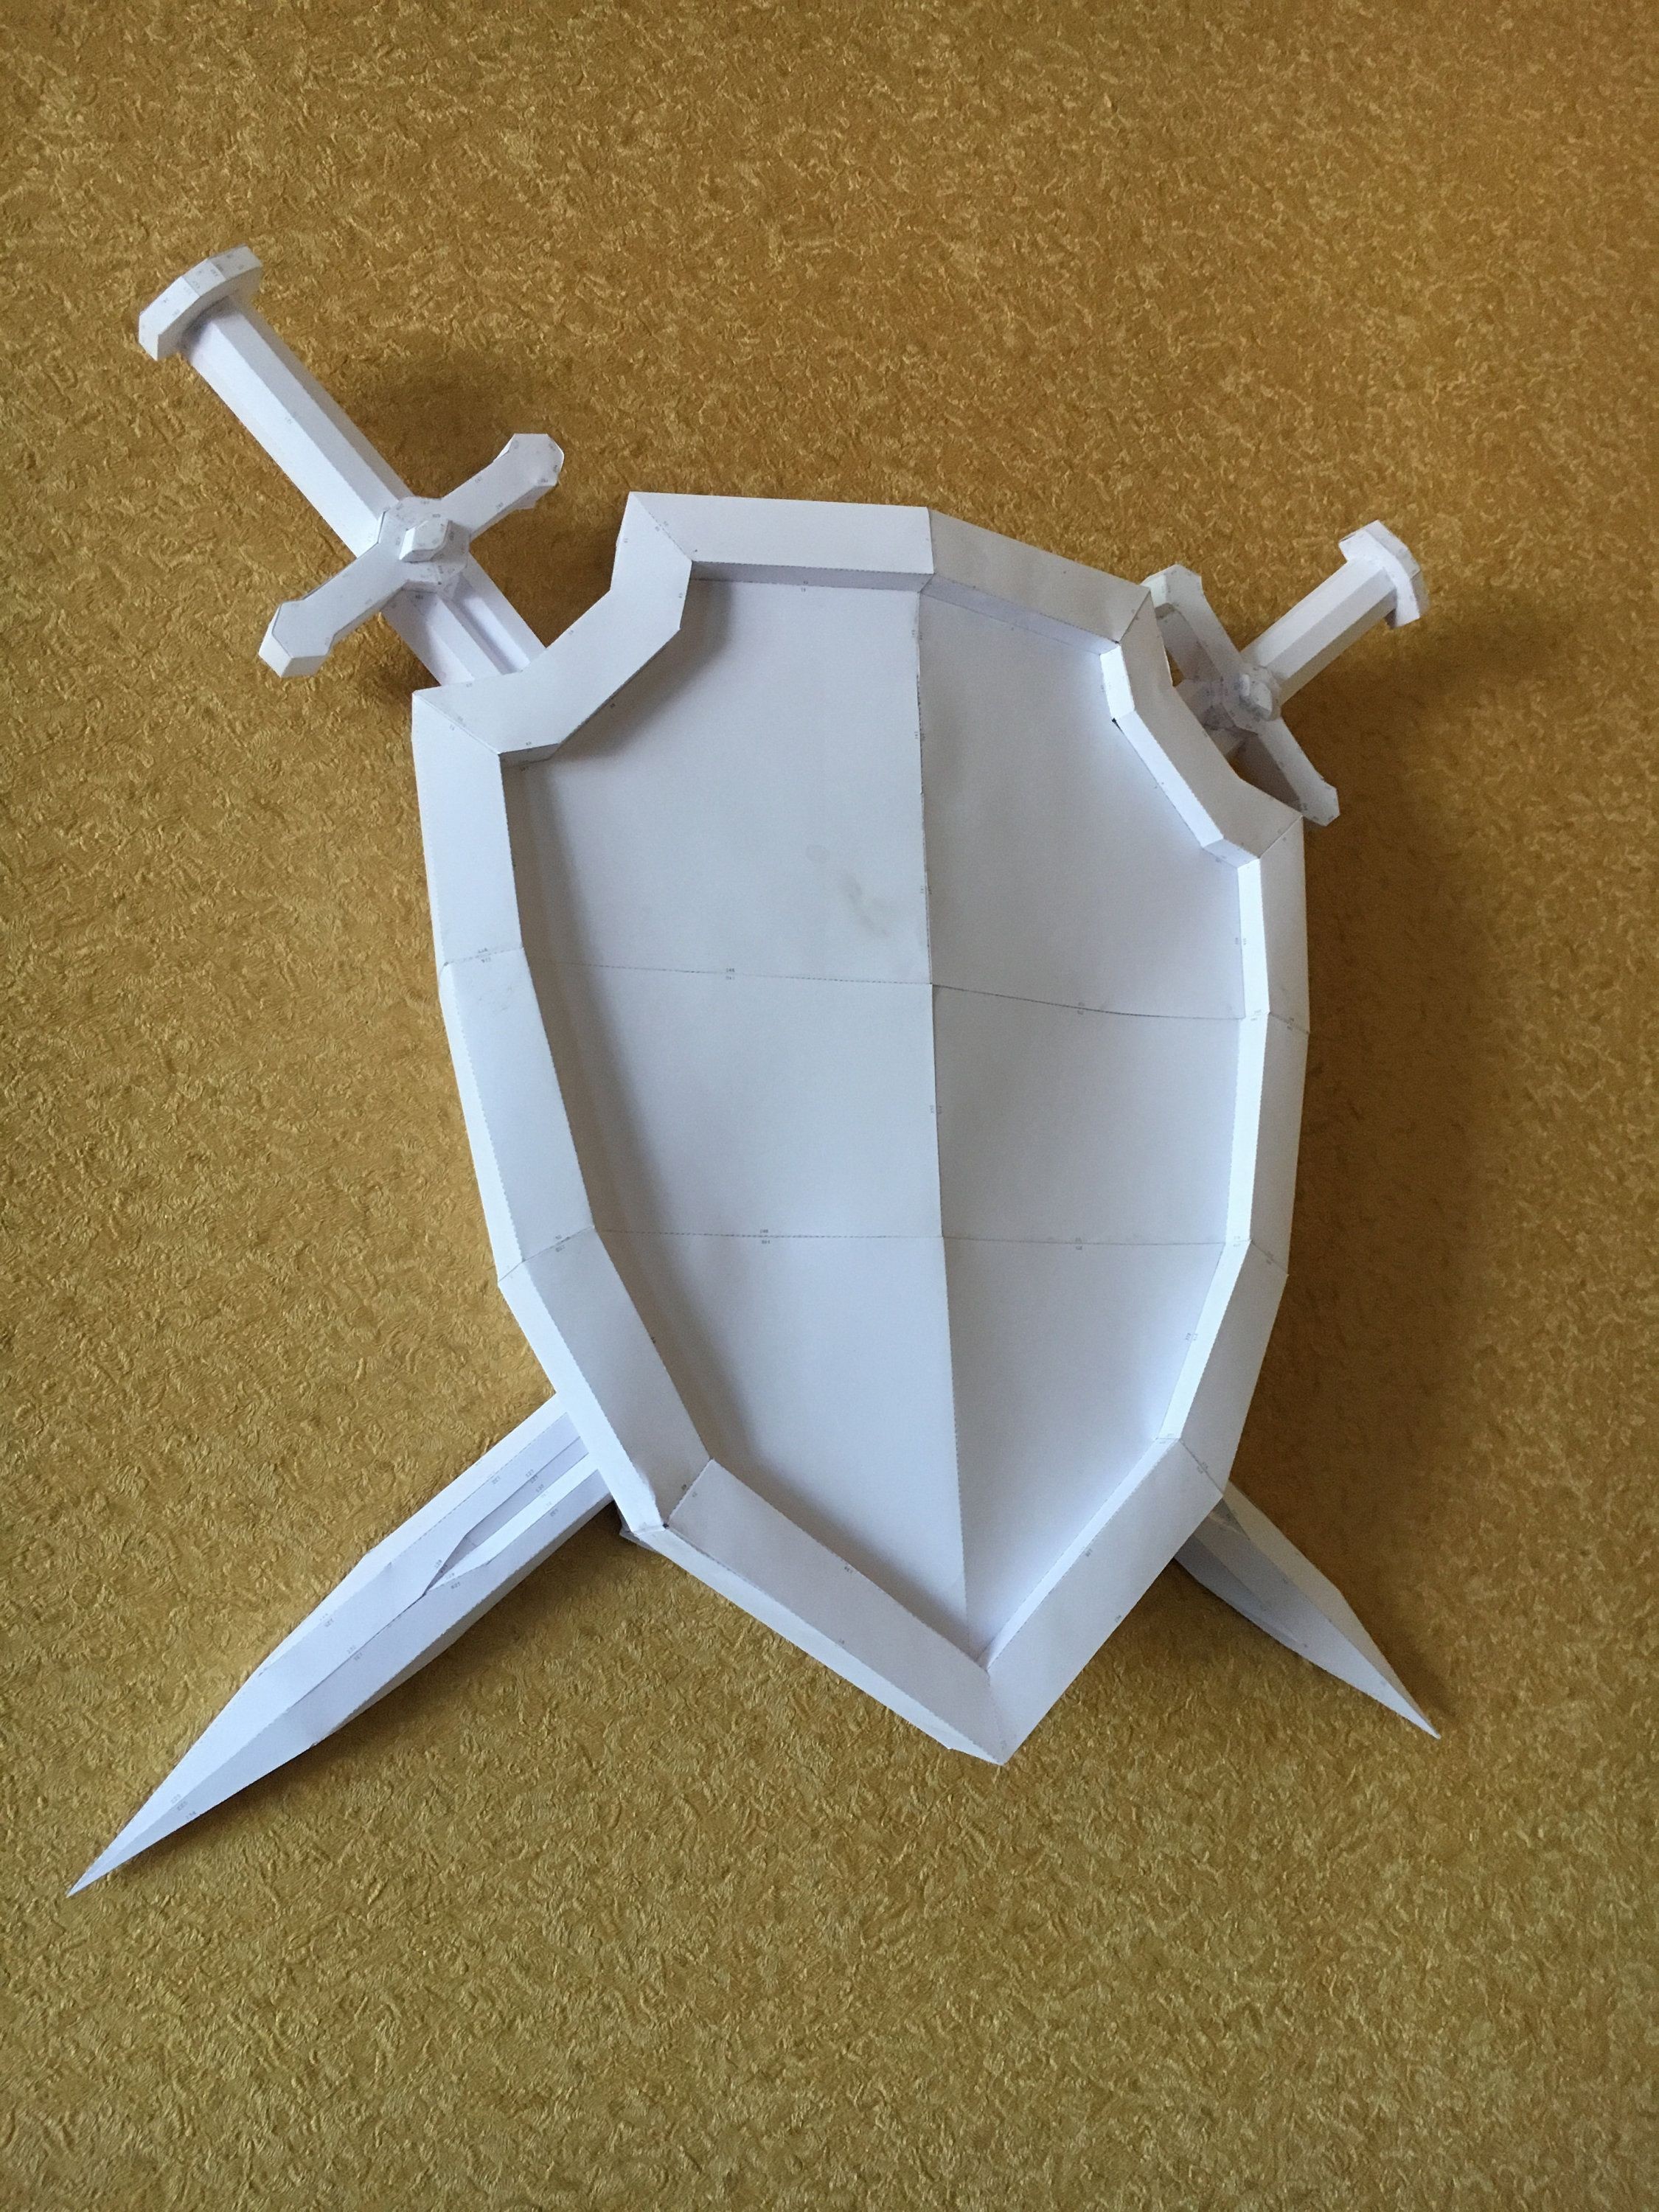 Papercraft Panda Sword Shield Diy Papercraft Model ÐÑÐ¼Ð°Ð¶Ð½ÑÐµ Ð¸Ð·Ð´ÐµÐ Ð¸Ñ